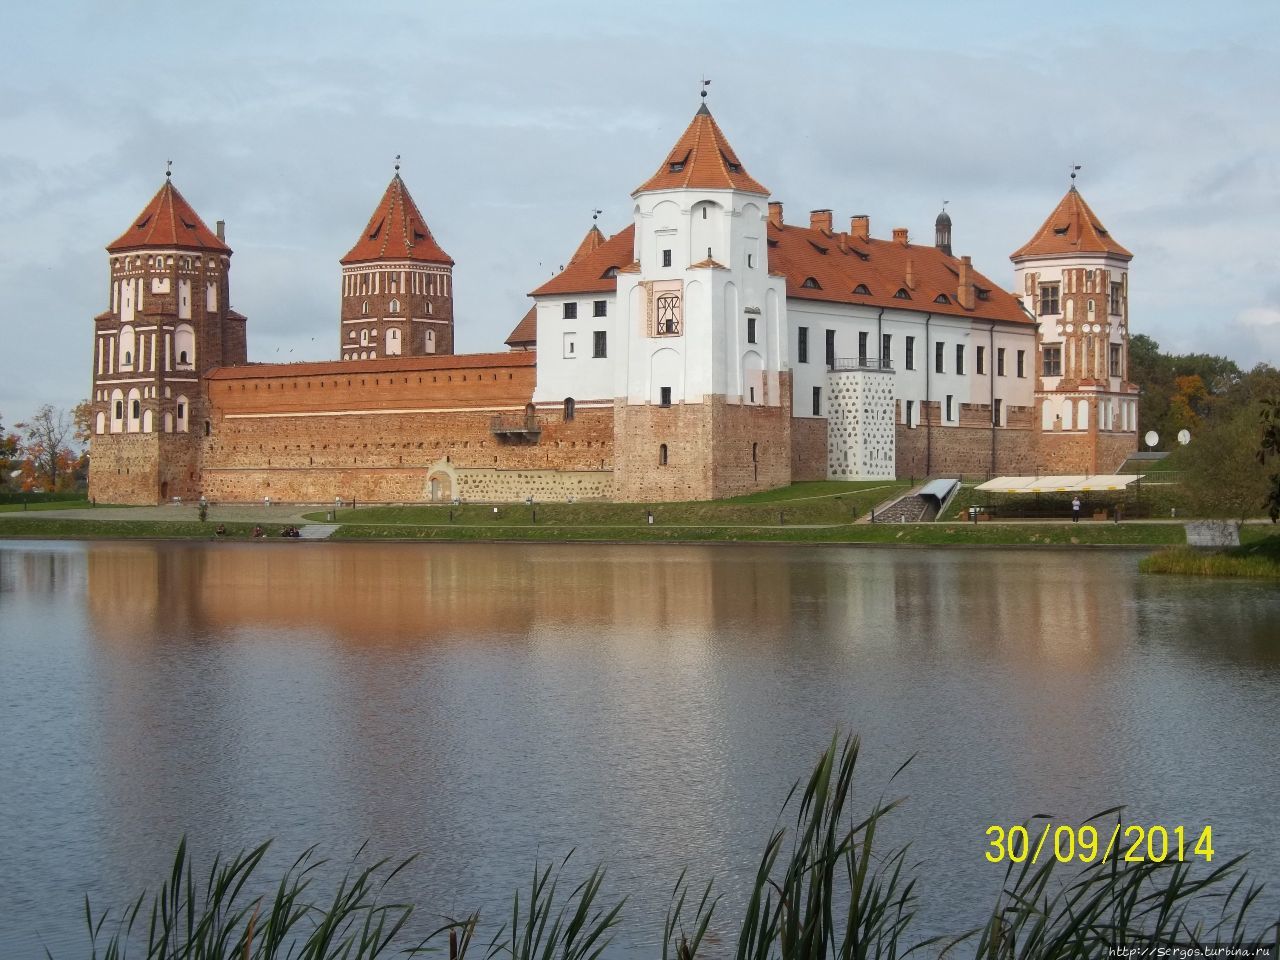 Готический замок в Мире (1522-26гг.), заслуженно включённый в ВКН ЮНЕСКО-главный бренд Беларуси Беларусь